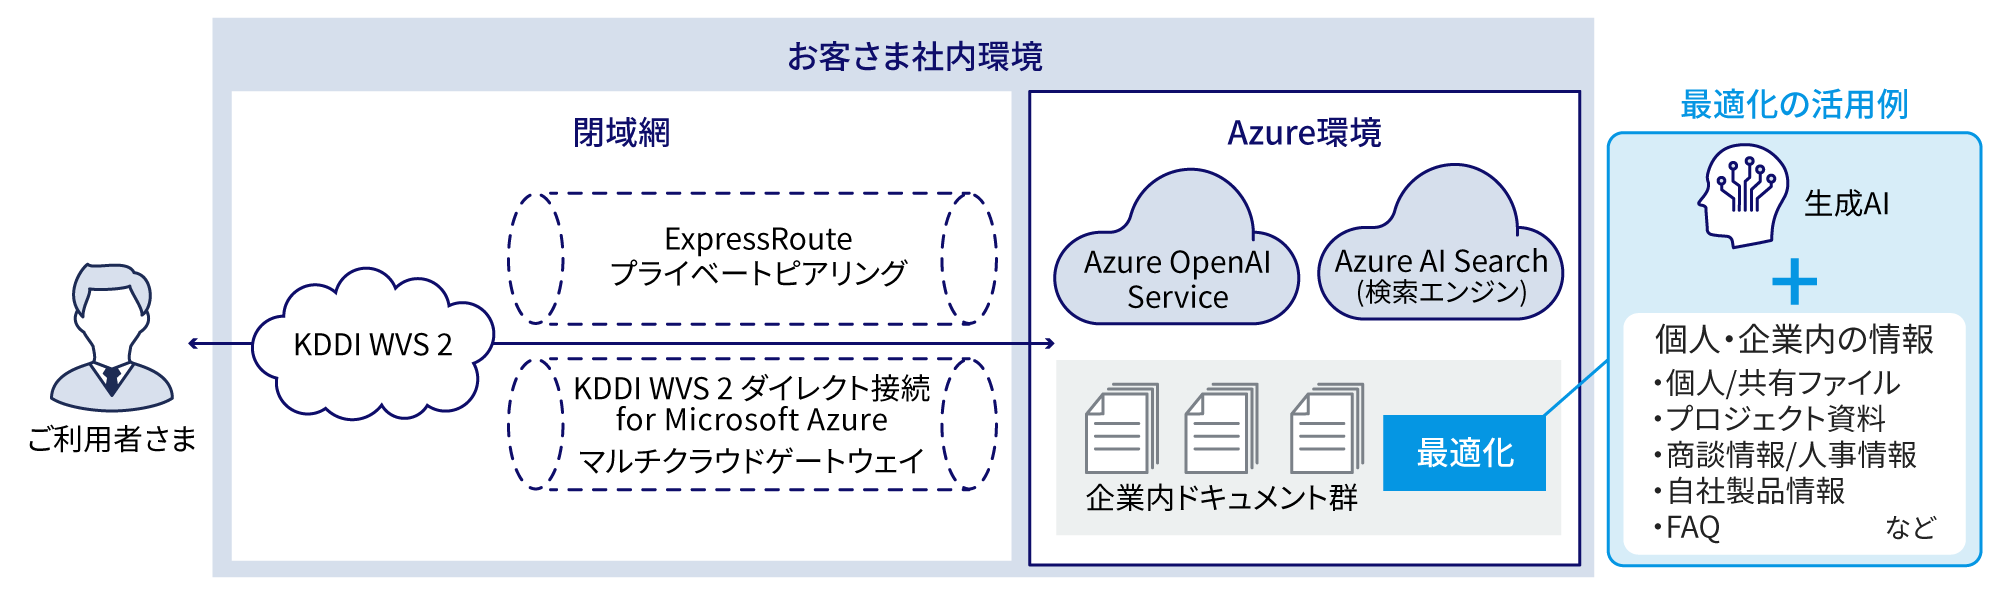 ご利用者さまが閉域網（KDDI WVS 2からExpressRouteプライベートピアリングとKDDI WVS 2 ダイレクト接続 for Microsoft Azure、マルチクラウド GW）を通り、Azure環境のAzure OpenAl ServiceとAzure Al Search (検索エンジン)に接続。企業内ドキュメント群を最適化できる。最適化の活用例として生成Alと個人・企業内の情報（個人/共有ファイル、プロジェクト資料、商談情報 / 人事情報、自社製品情報、FAQなど）をを組み合わせすことができる。